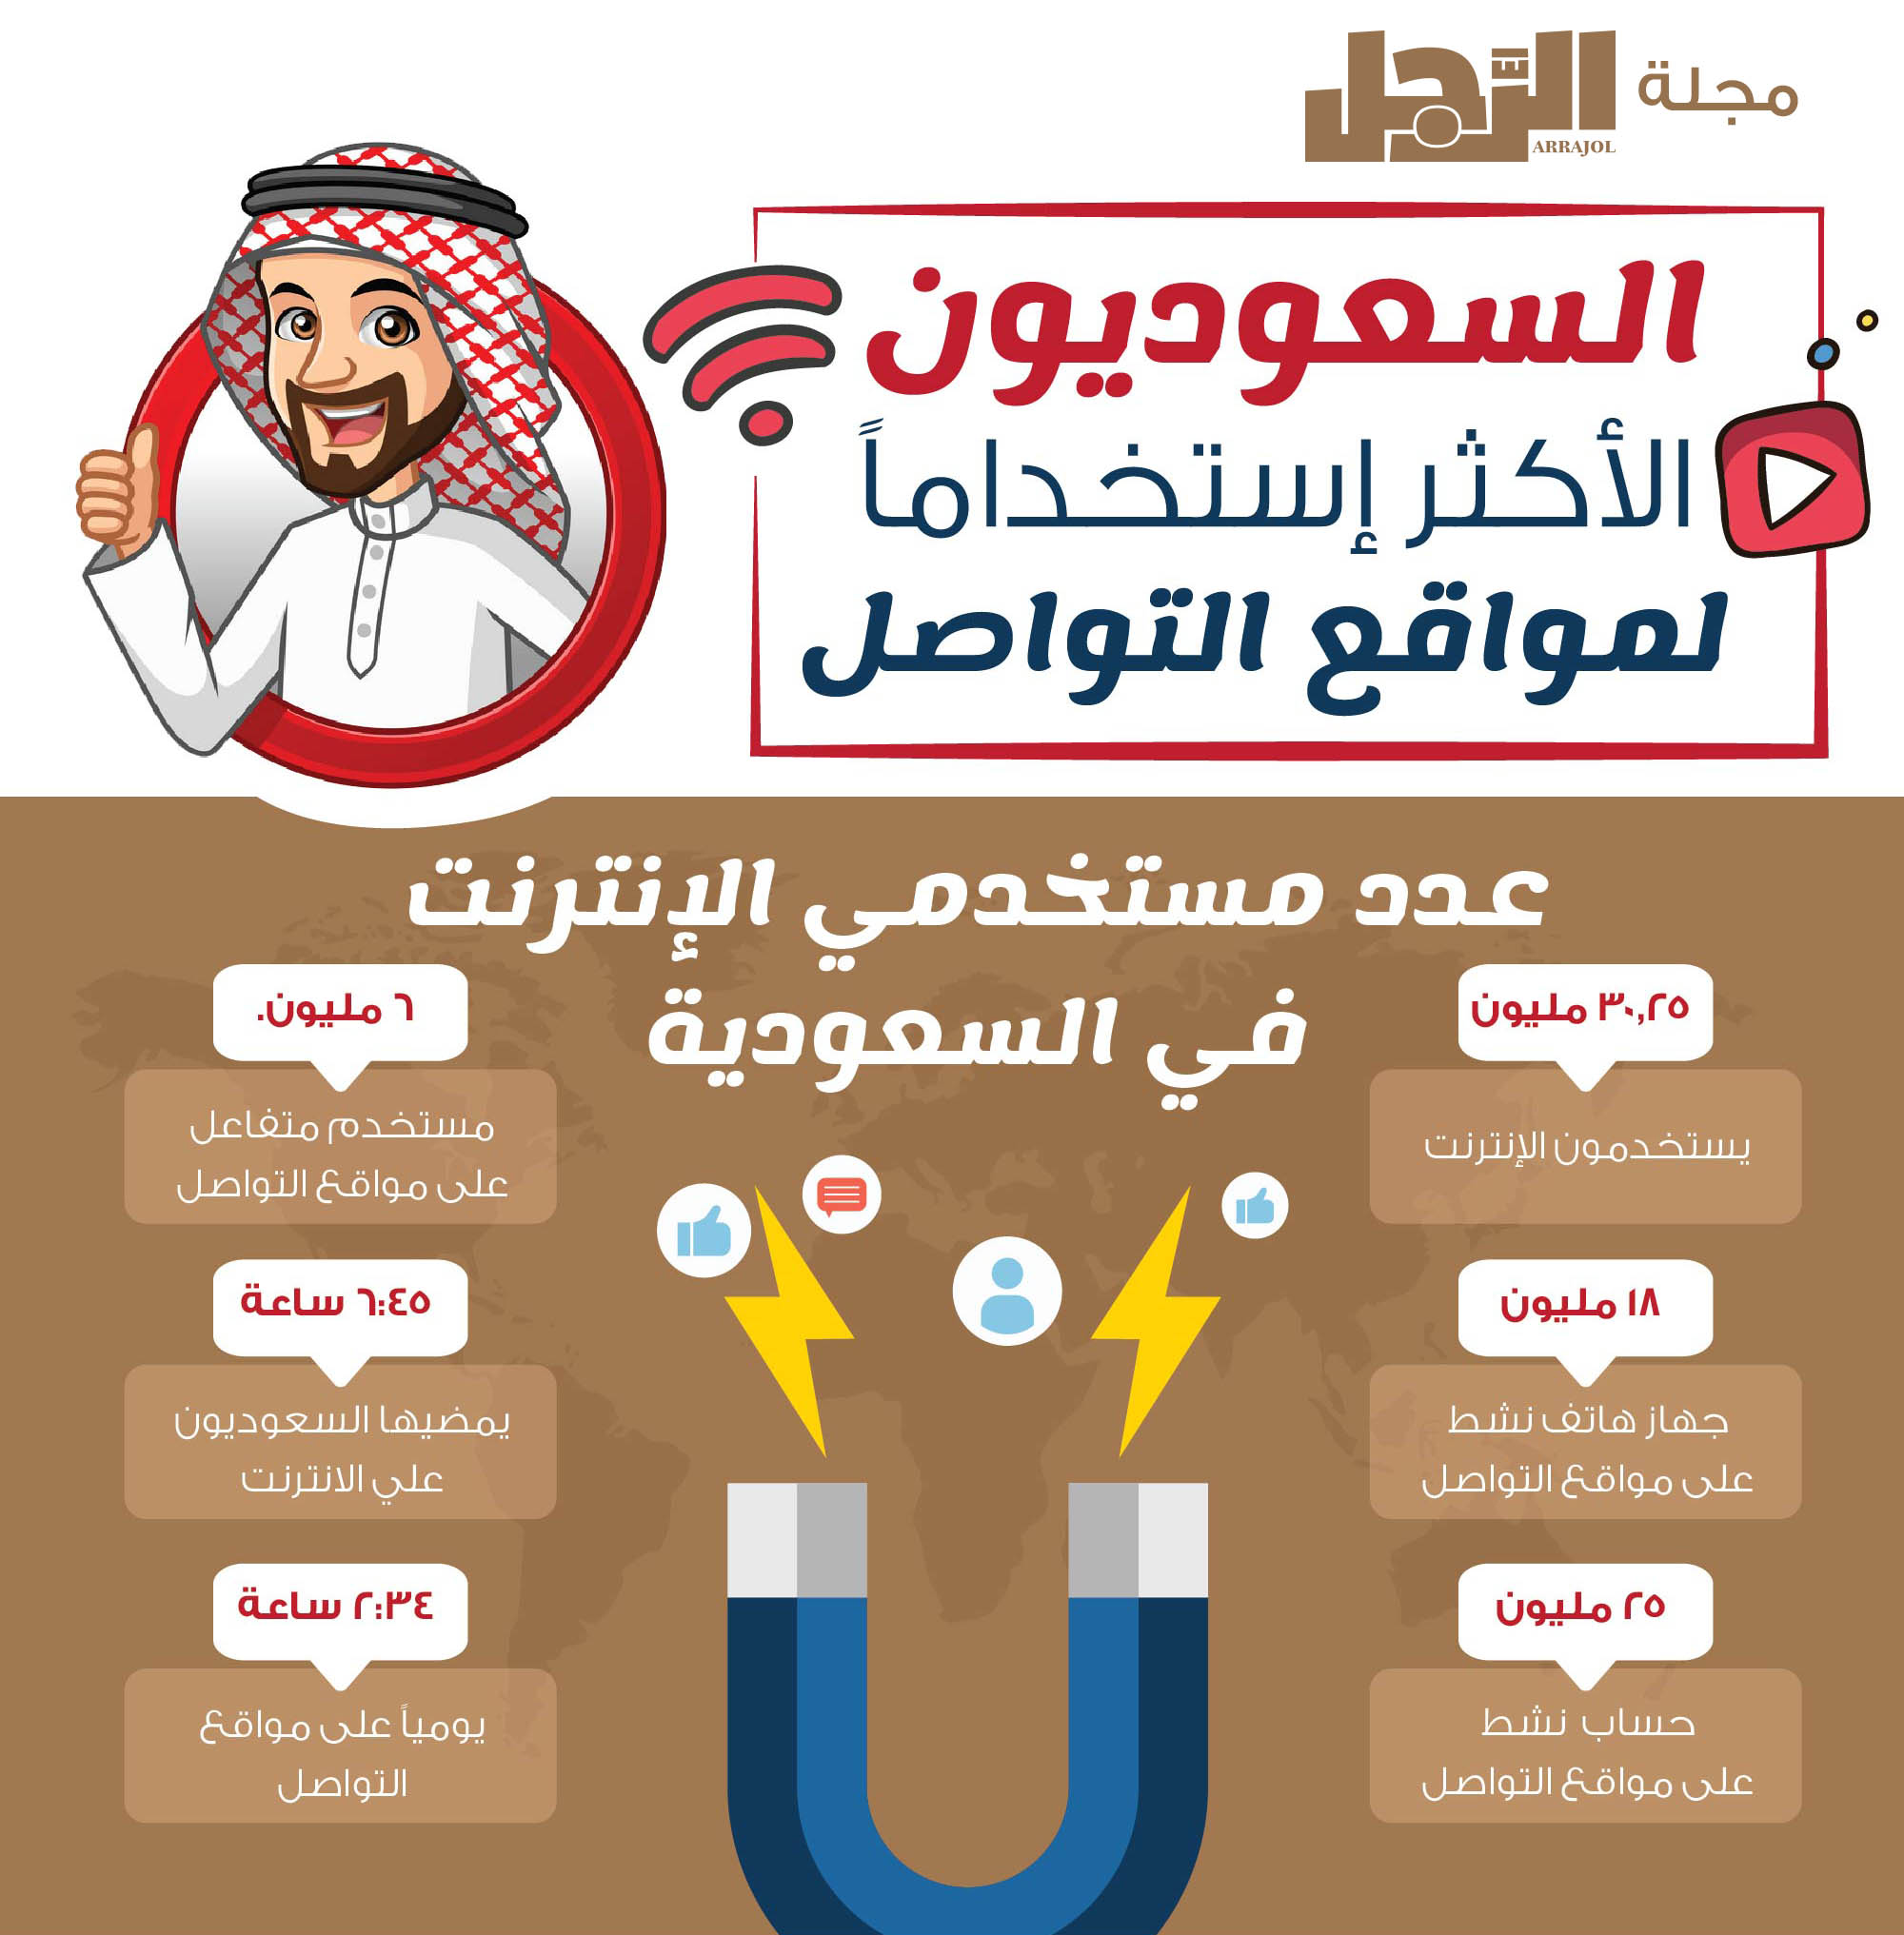 اكثر برامج التواصل الاجتماعي استخداما في السعودية malayriap